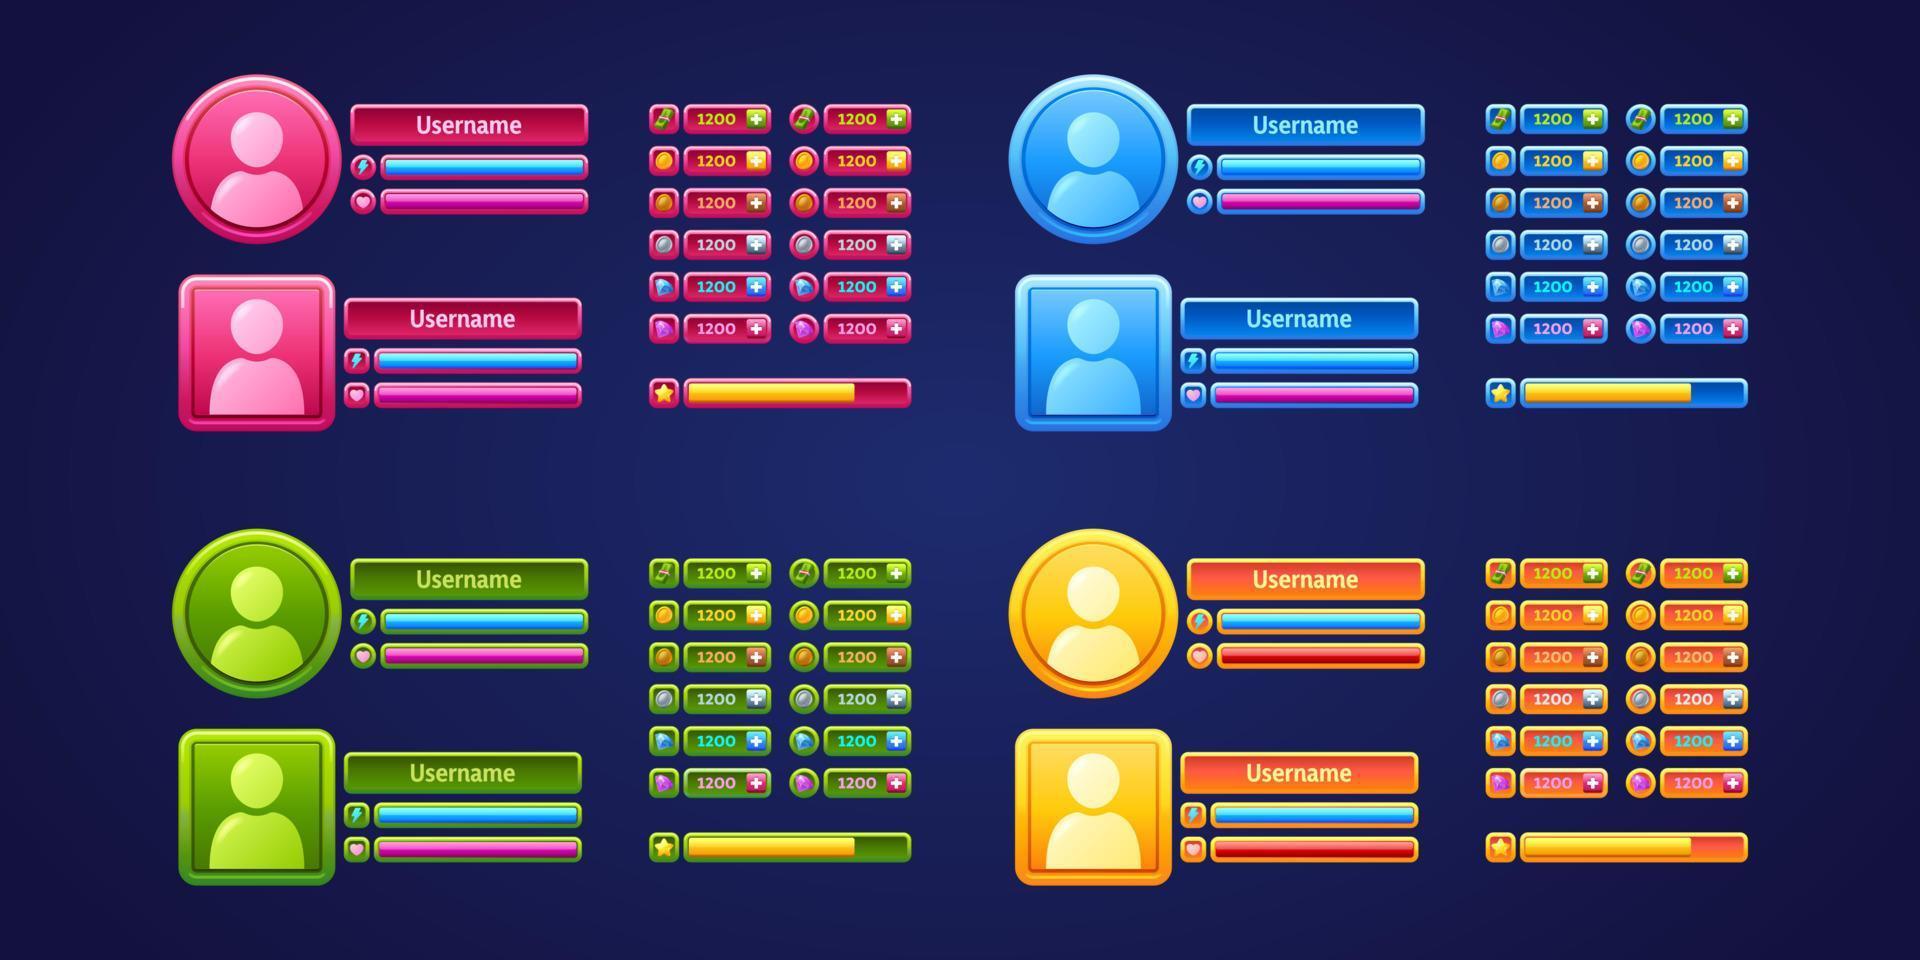 panneaux de menu utilisateur du jeu, ensemble de profils de joueur rpg vecteur